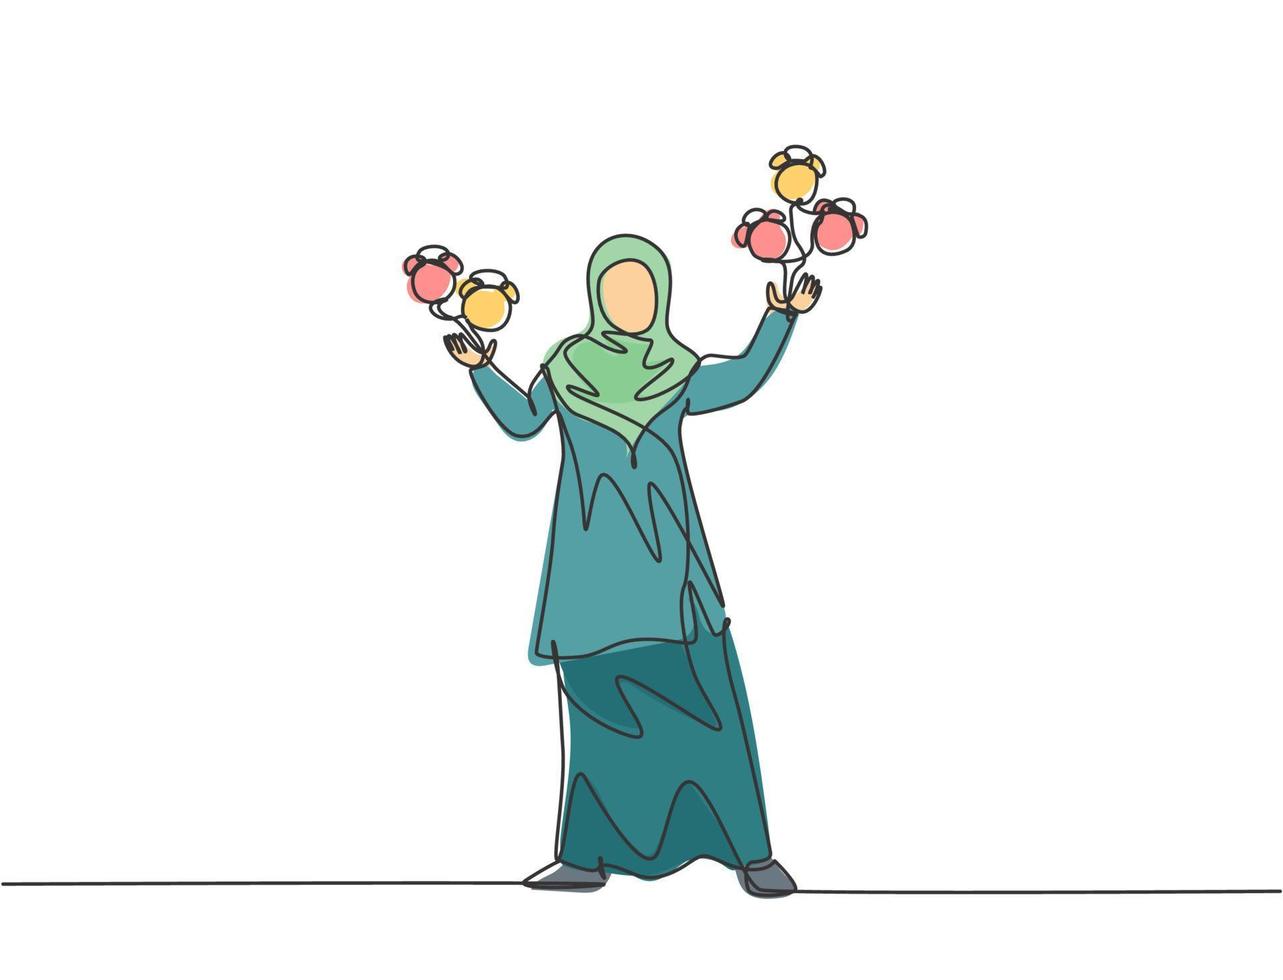 dibujo de una sola línea de mujer de negocios árabe joven que hace malabarismos con el reloj analógico de alarma con sus manos. concepto de metáfora de disciplina de tiempo de negocios. Ilustración de vector gráfico de diseño de dibujo de línea continua.